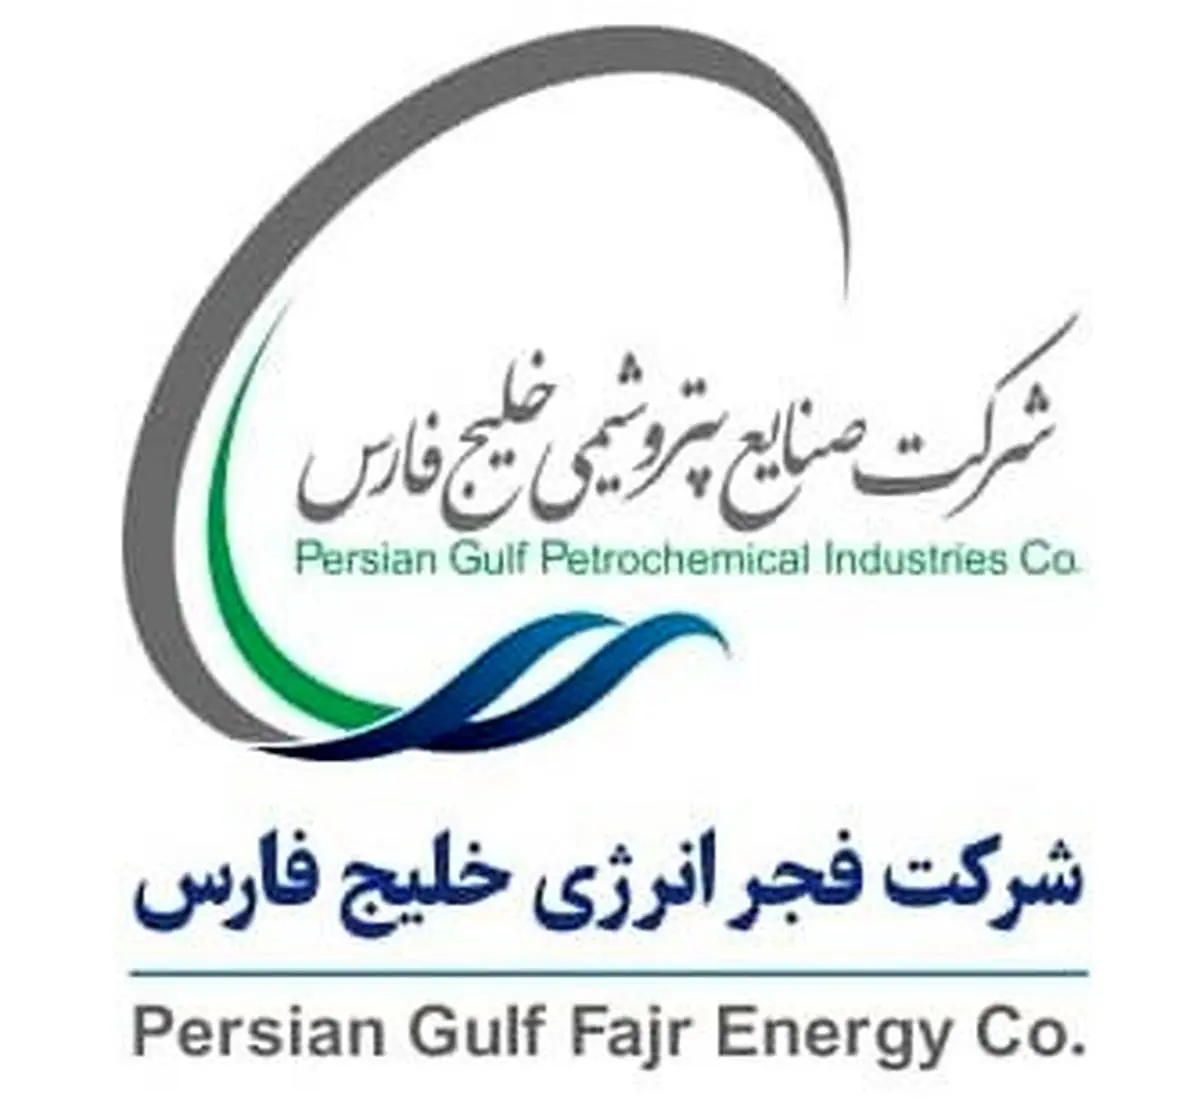 سامانه ارزیابی تامین کنندگان شرکت فجر انرژی خلیج فارس به زبان ساده